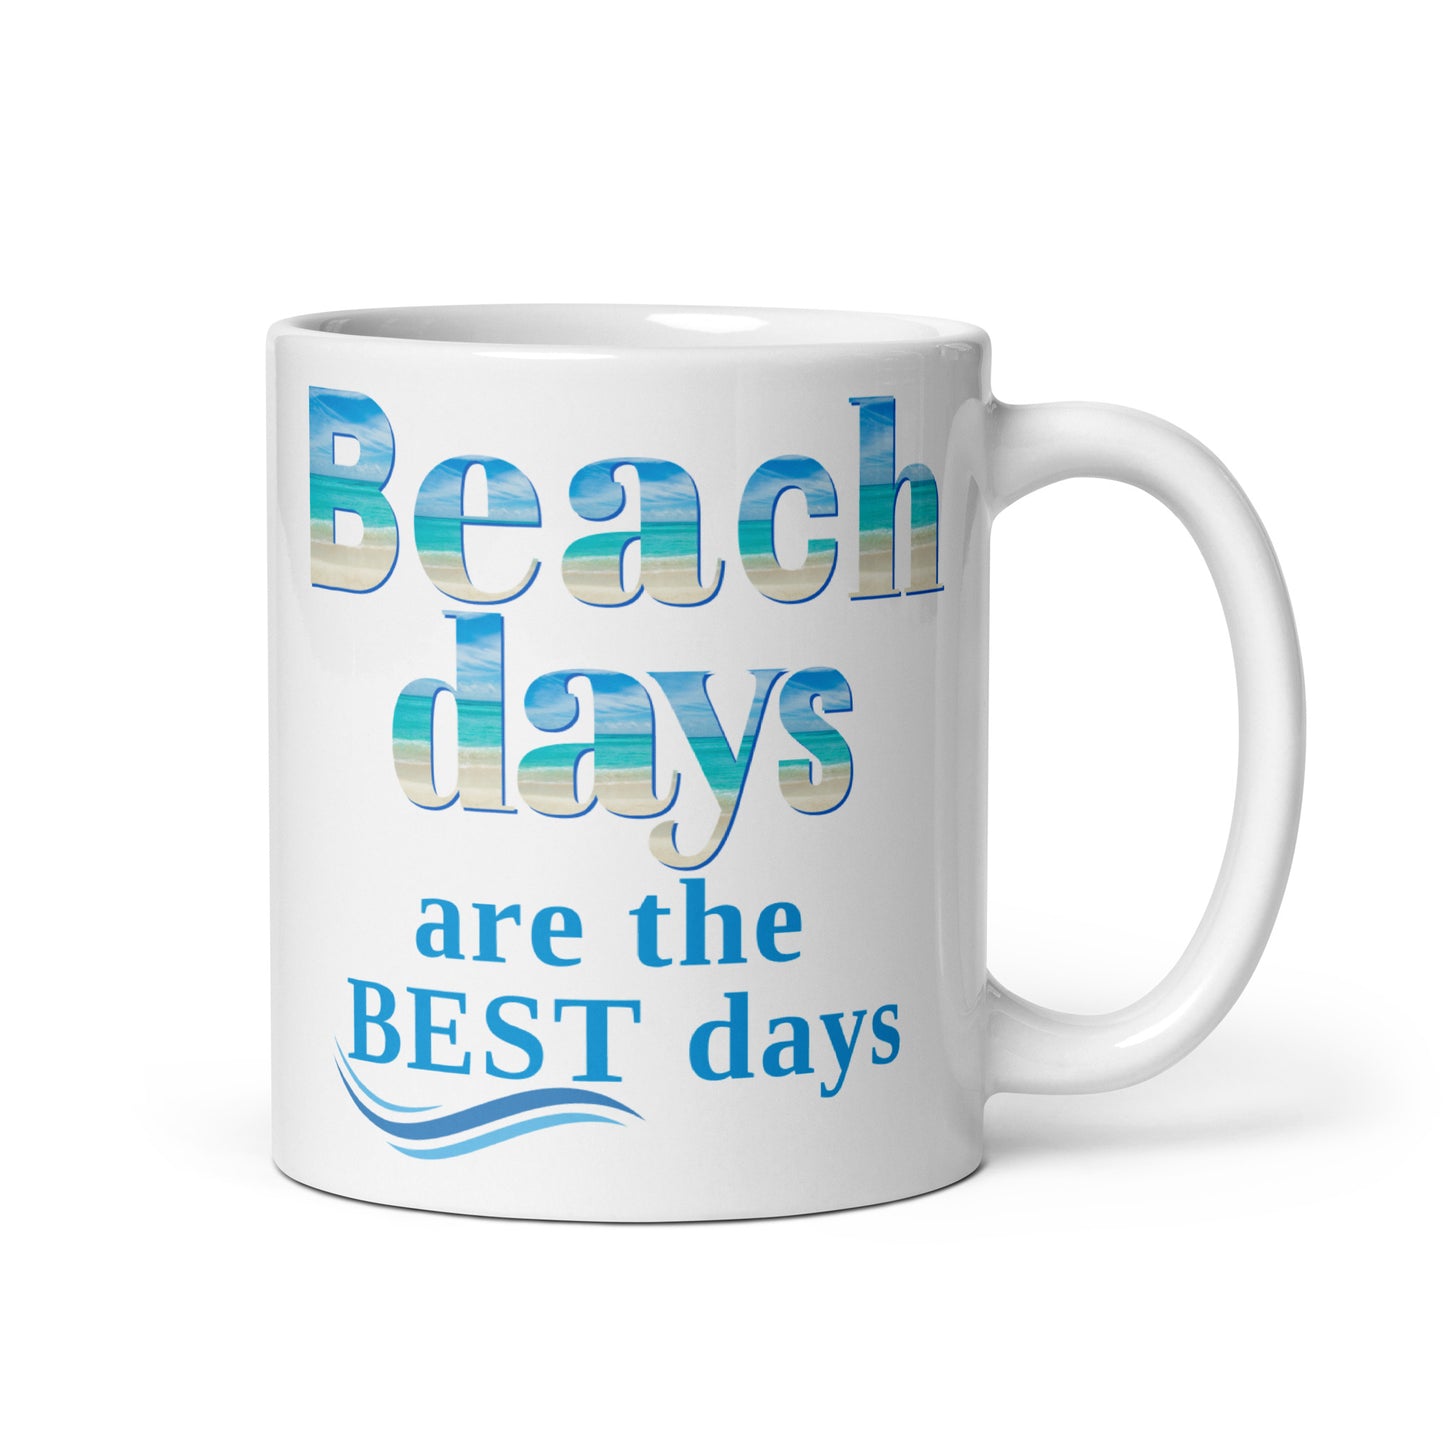 White Glossy Mug - Beach Days are the Best Days